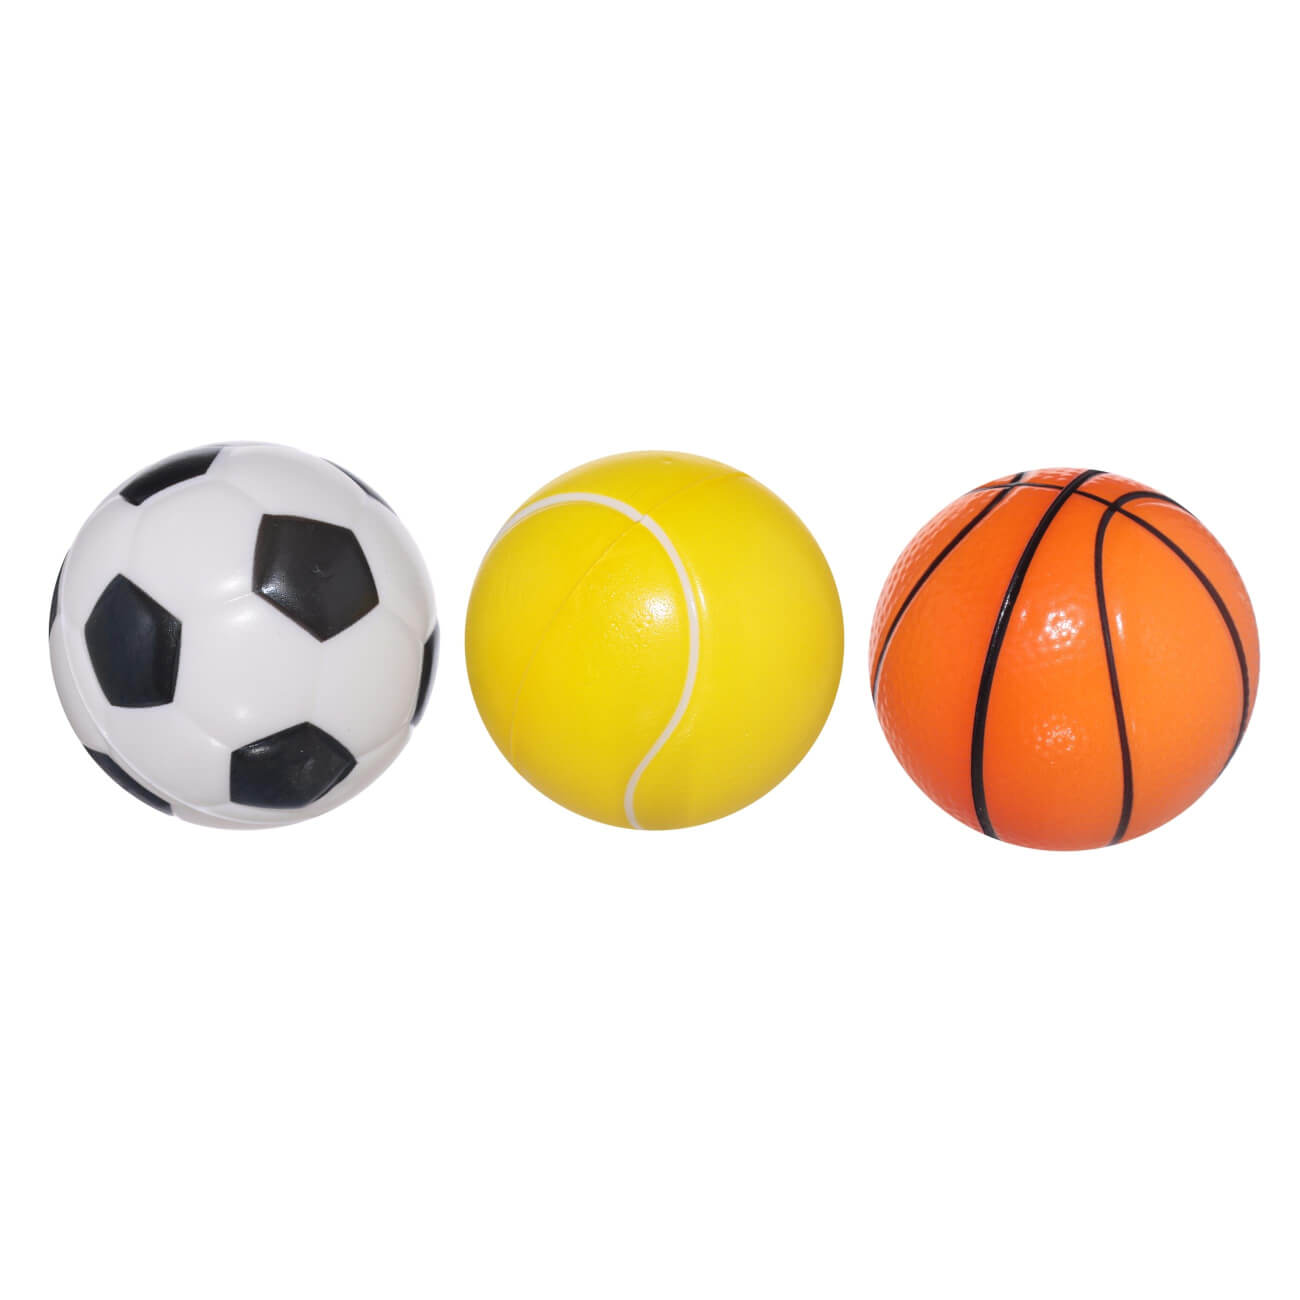 Мяч, 6 см, 3 шт, полиуретан, цветной, Футбол/Баскетбол/Теннис, Game медальница с фоторамкой футбол